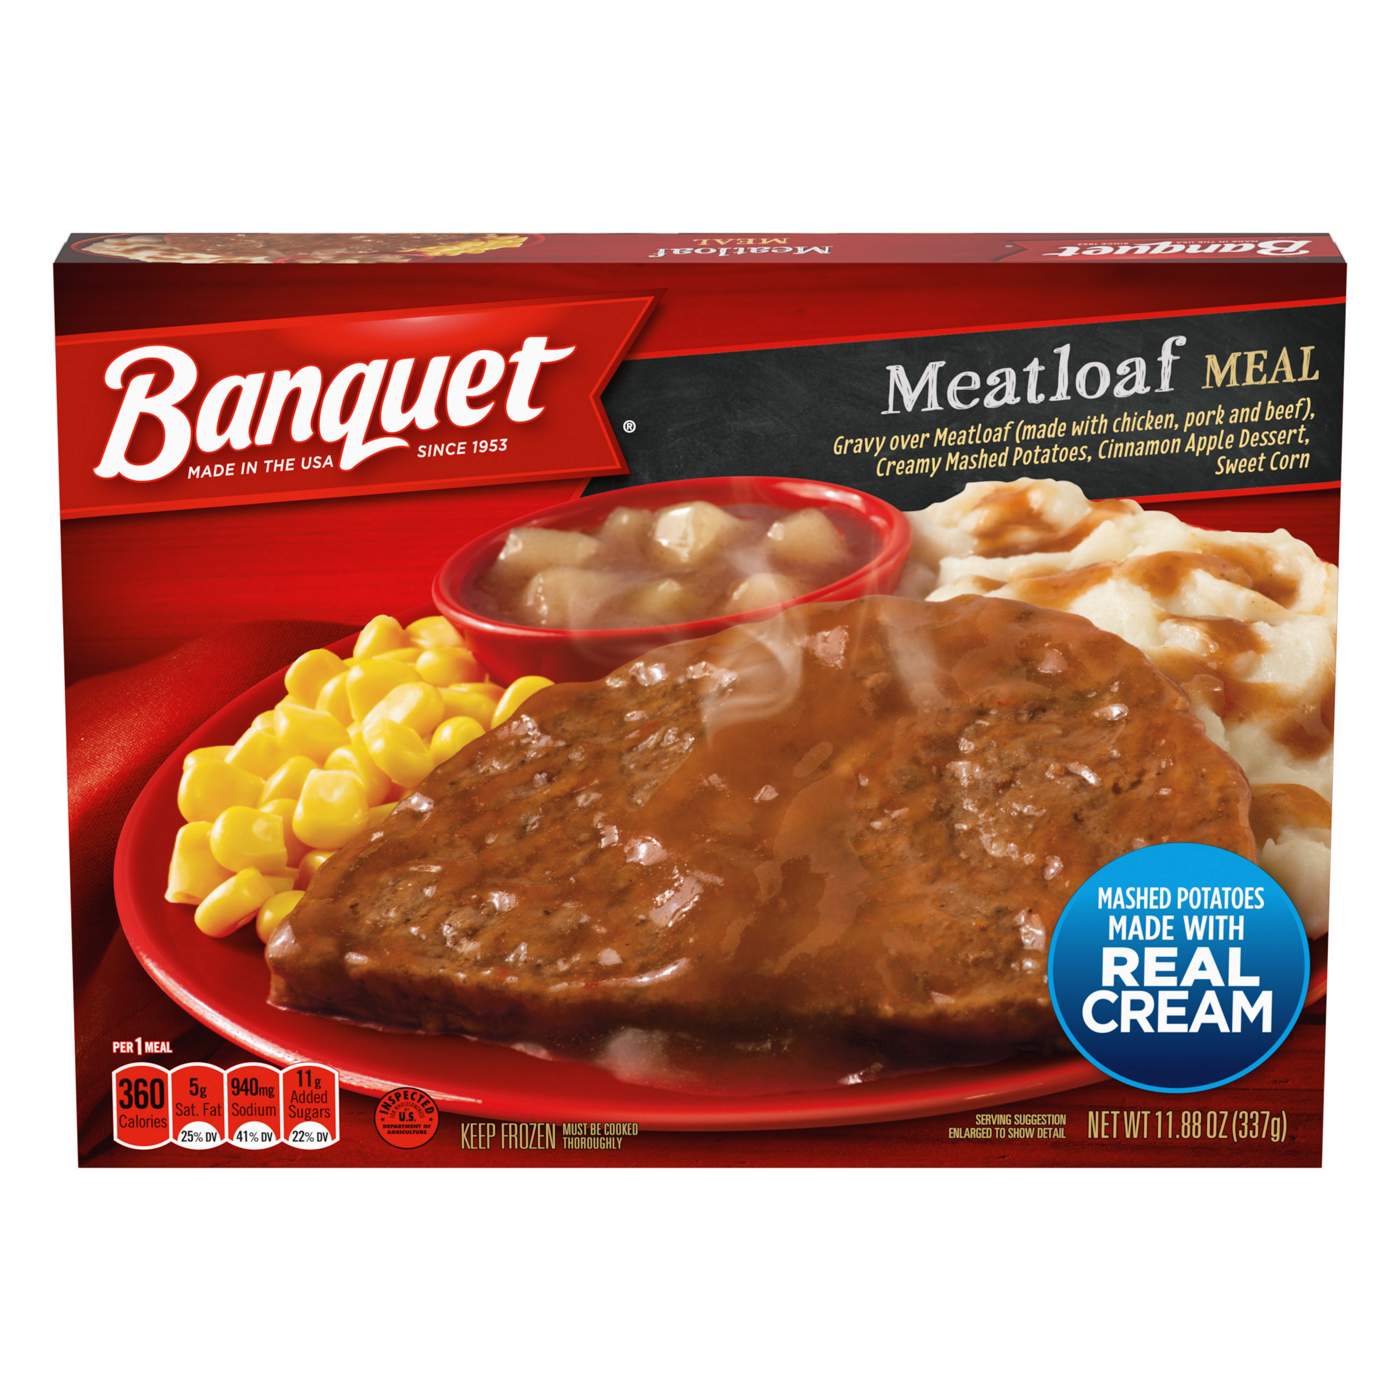 Banquet Meatloaf Frozen Meal; image 1 of 6